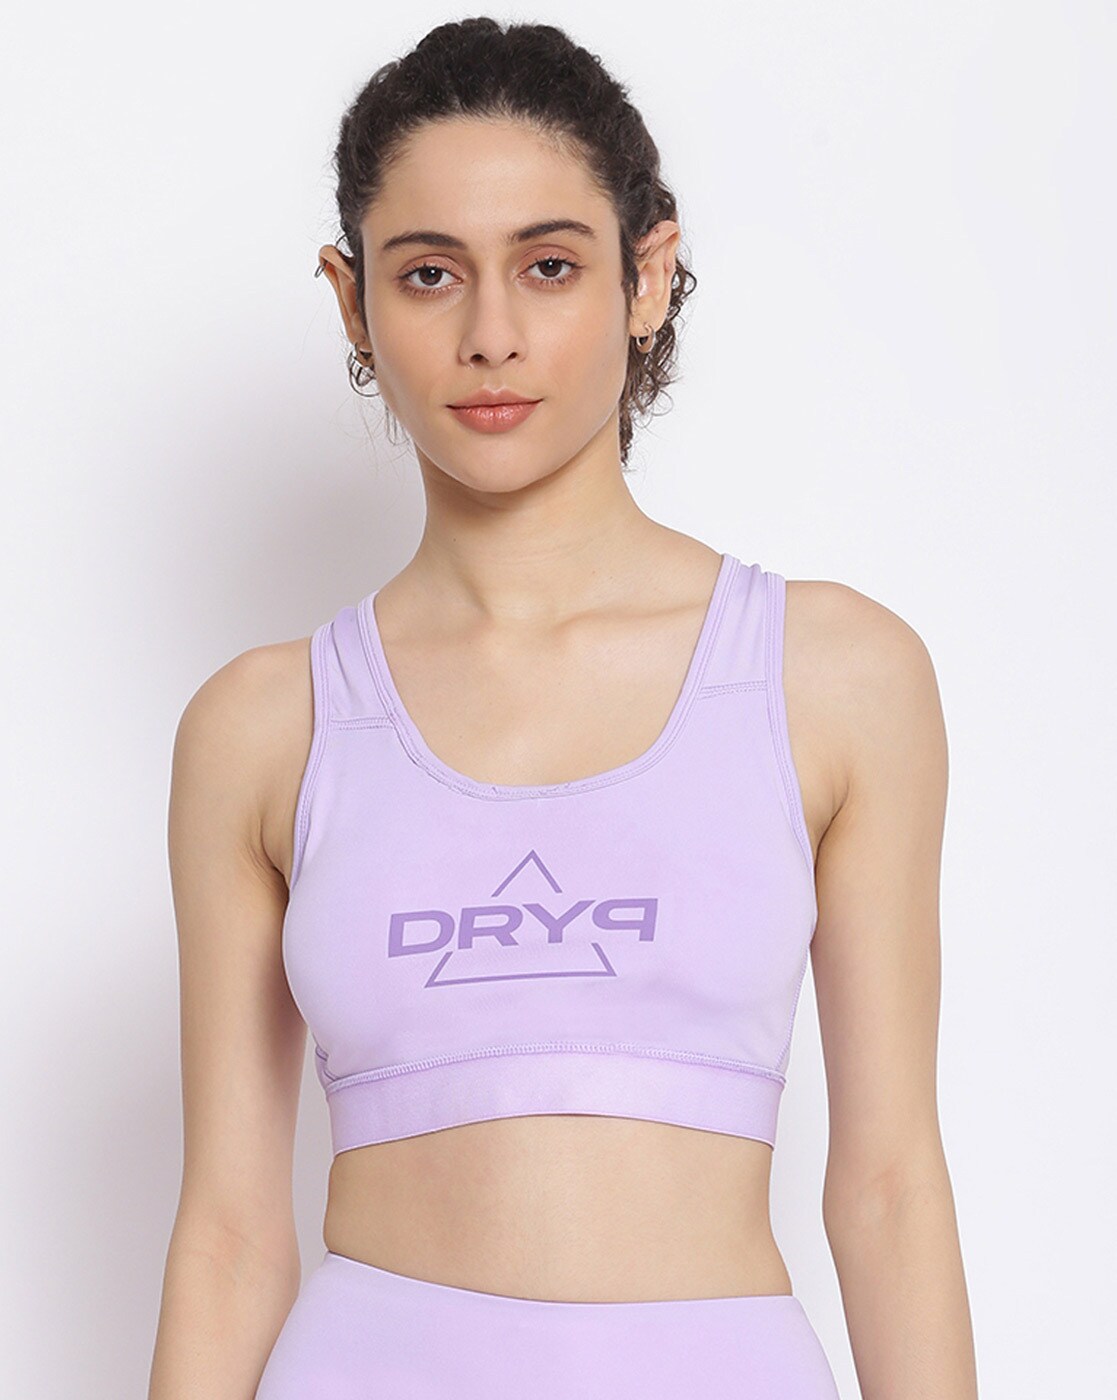 Buy Violet Bras for Women by Dryp Evolut Online